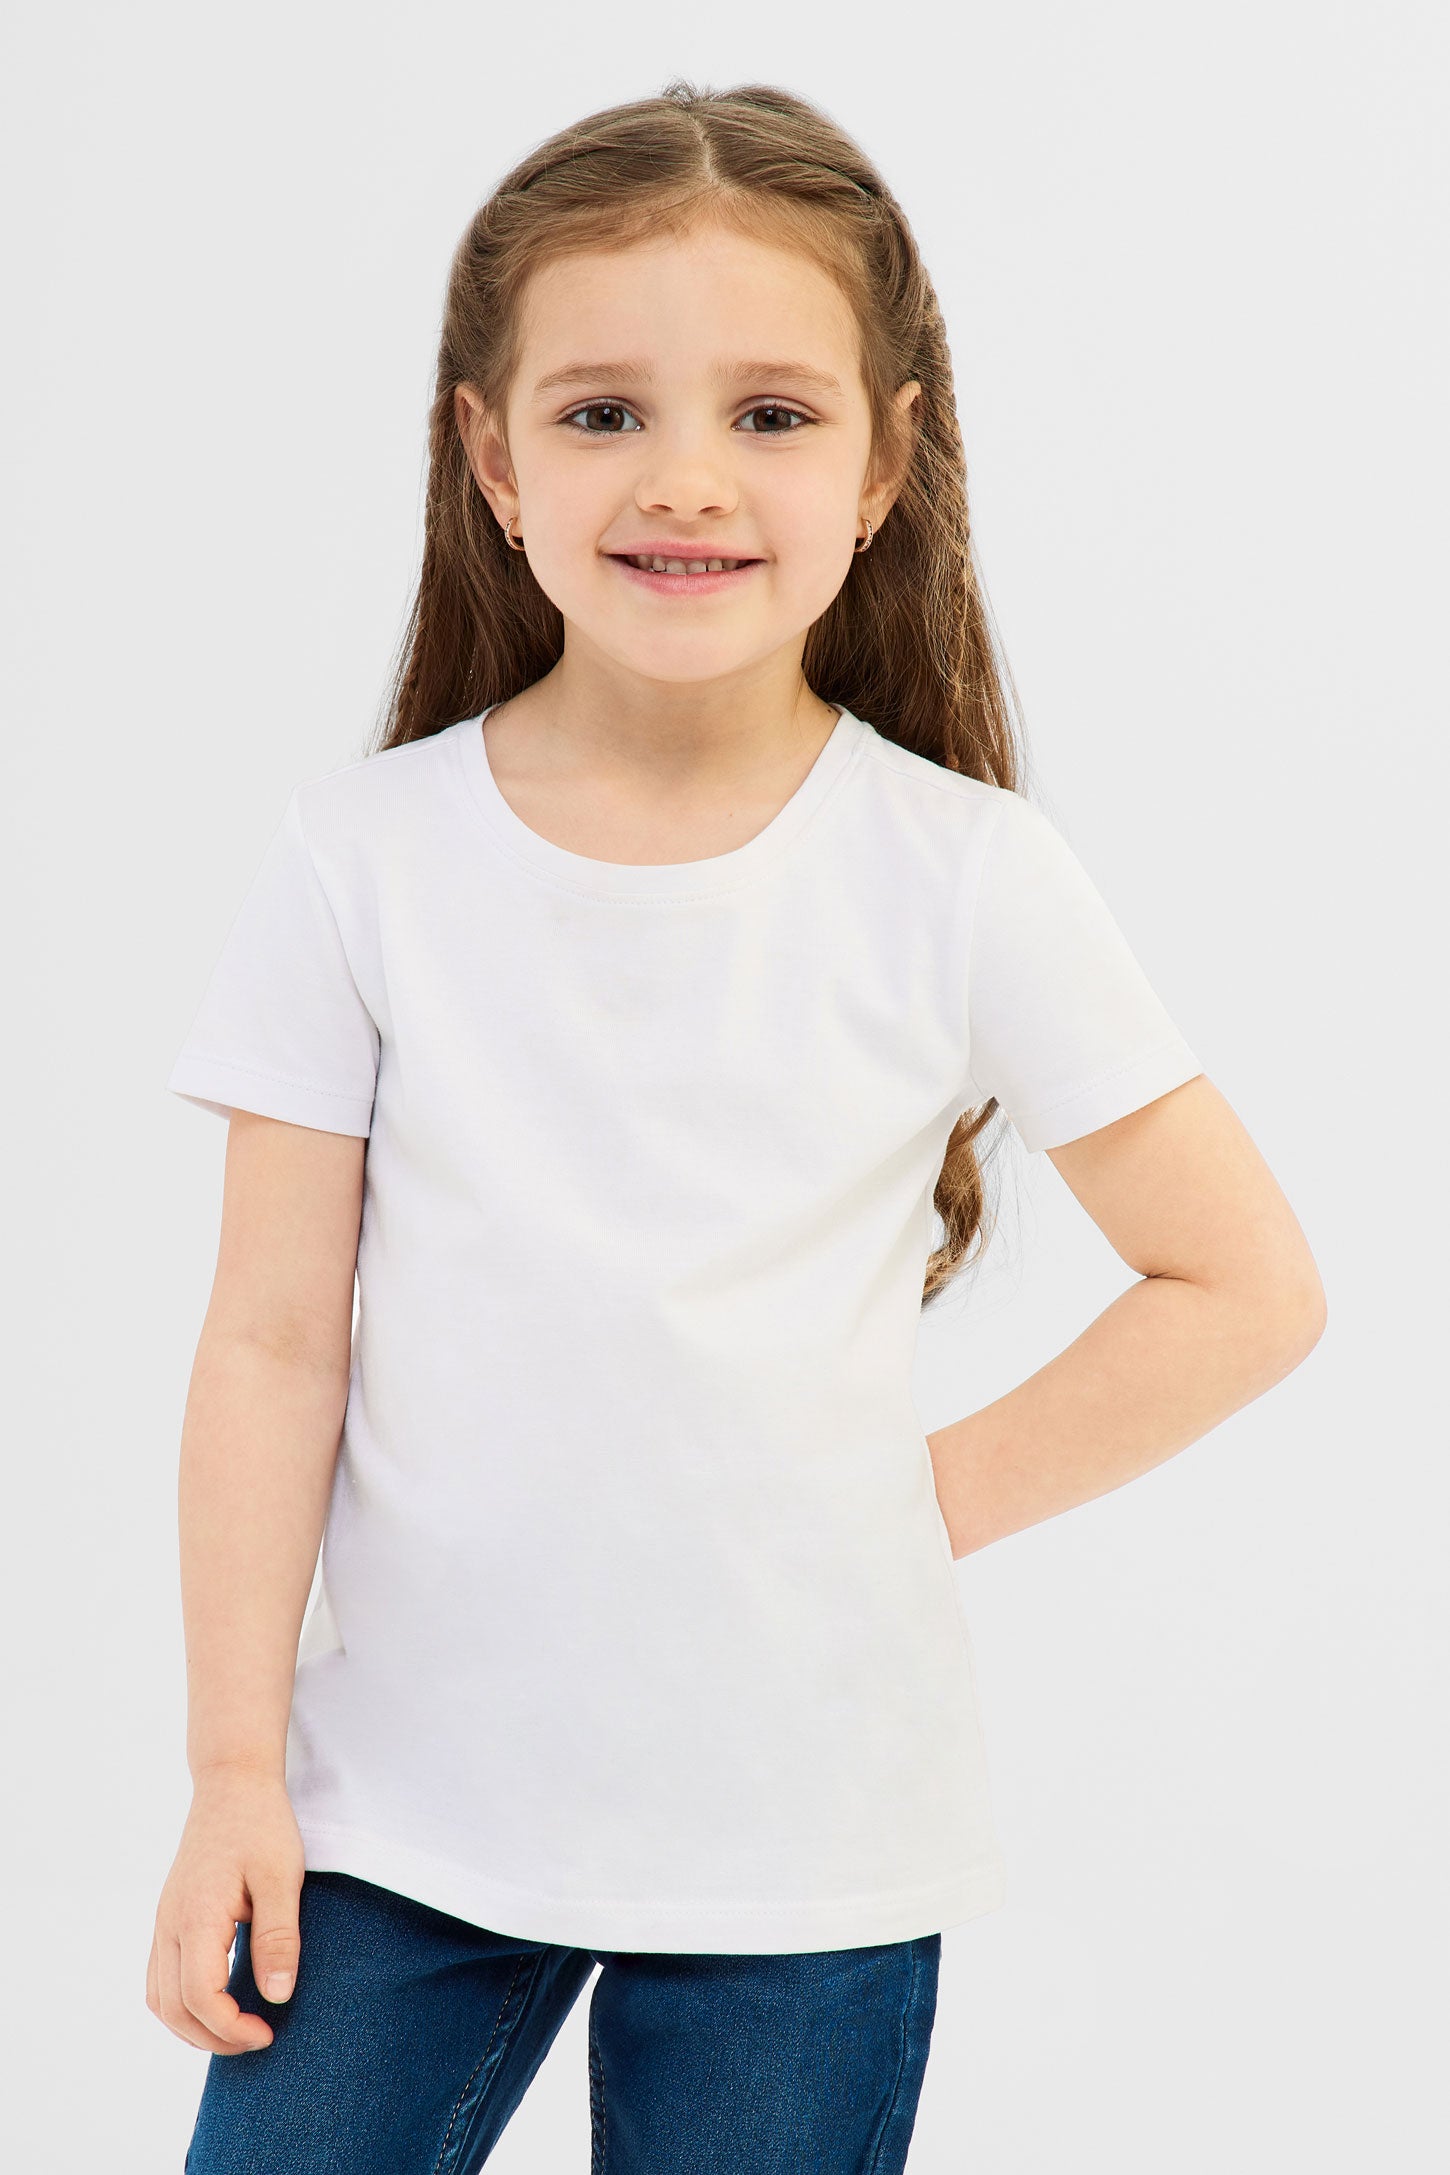 T-shirt en coton, 2/20$ - Enfant fille && BLANC